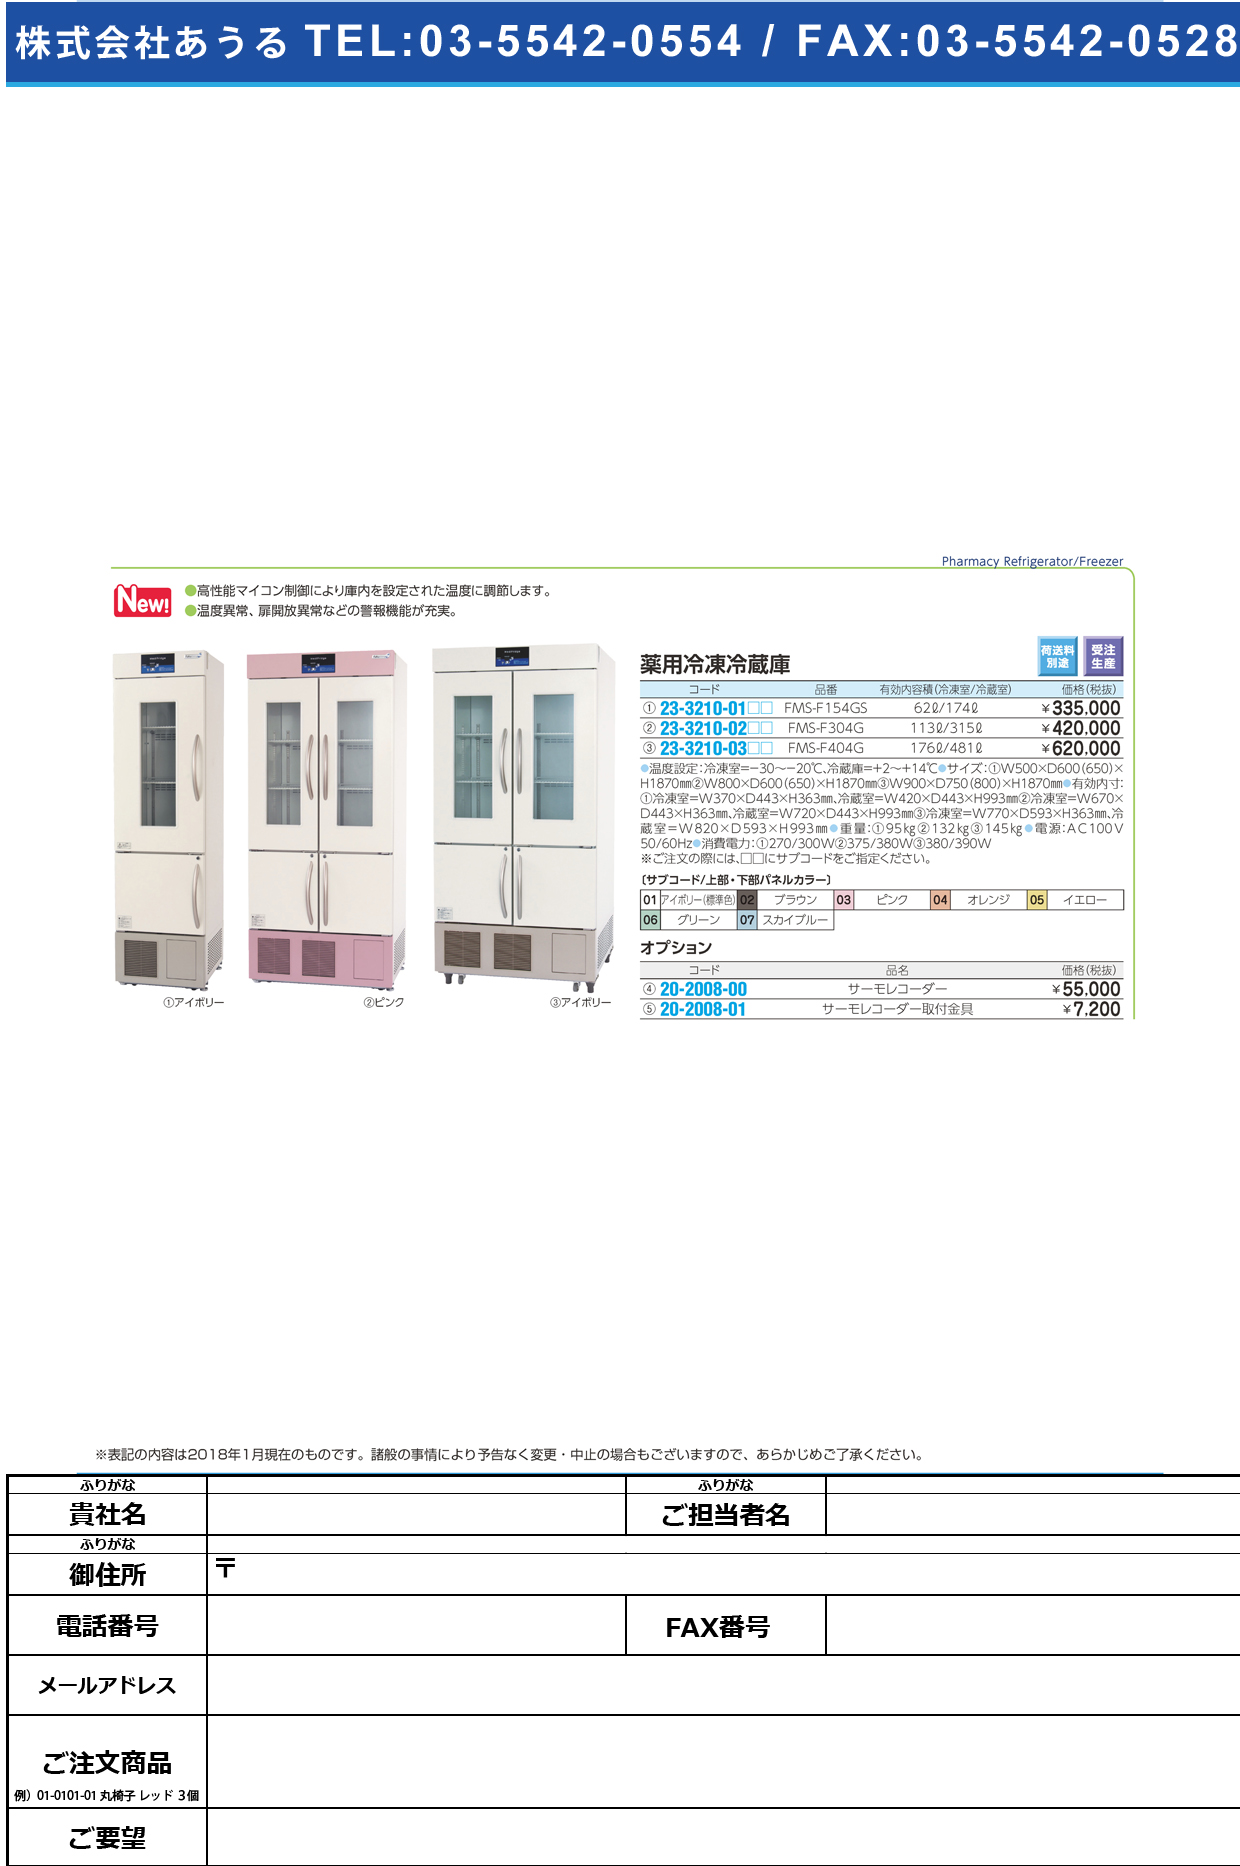 (23-3210-01)スリム型薬用冷凍冷蔵庫 FMS-F154GS(62/174L) ｽﾘﾑｶﾞﾀﾔｸﾖｳﾚｲｿﾞｳﾚｲﾄｳｺ アイボリー（標準色）(福島工業)【1台単位】【2018年カタログ商品】